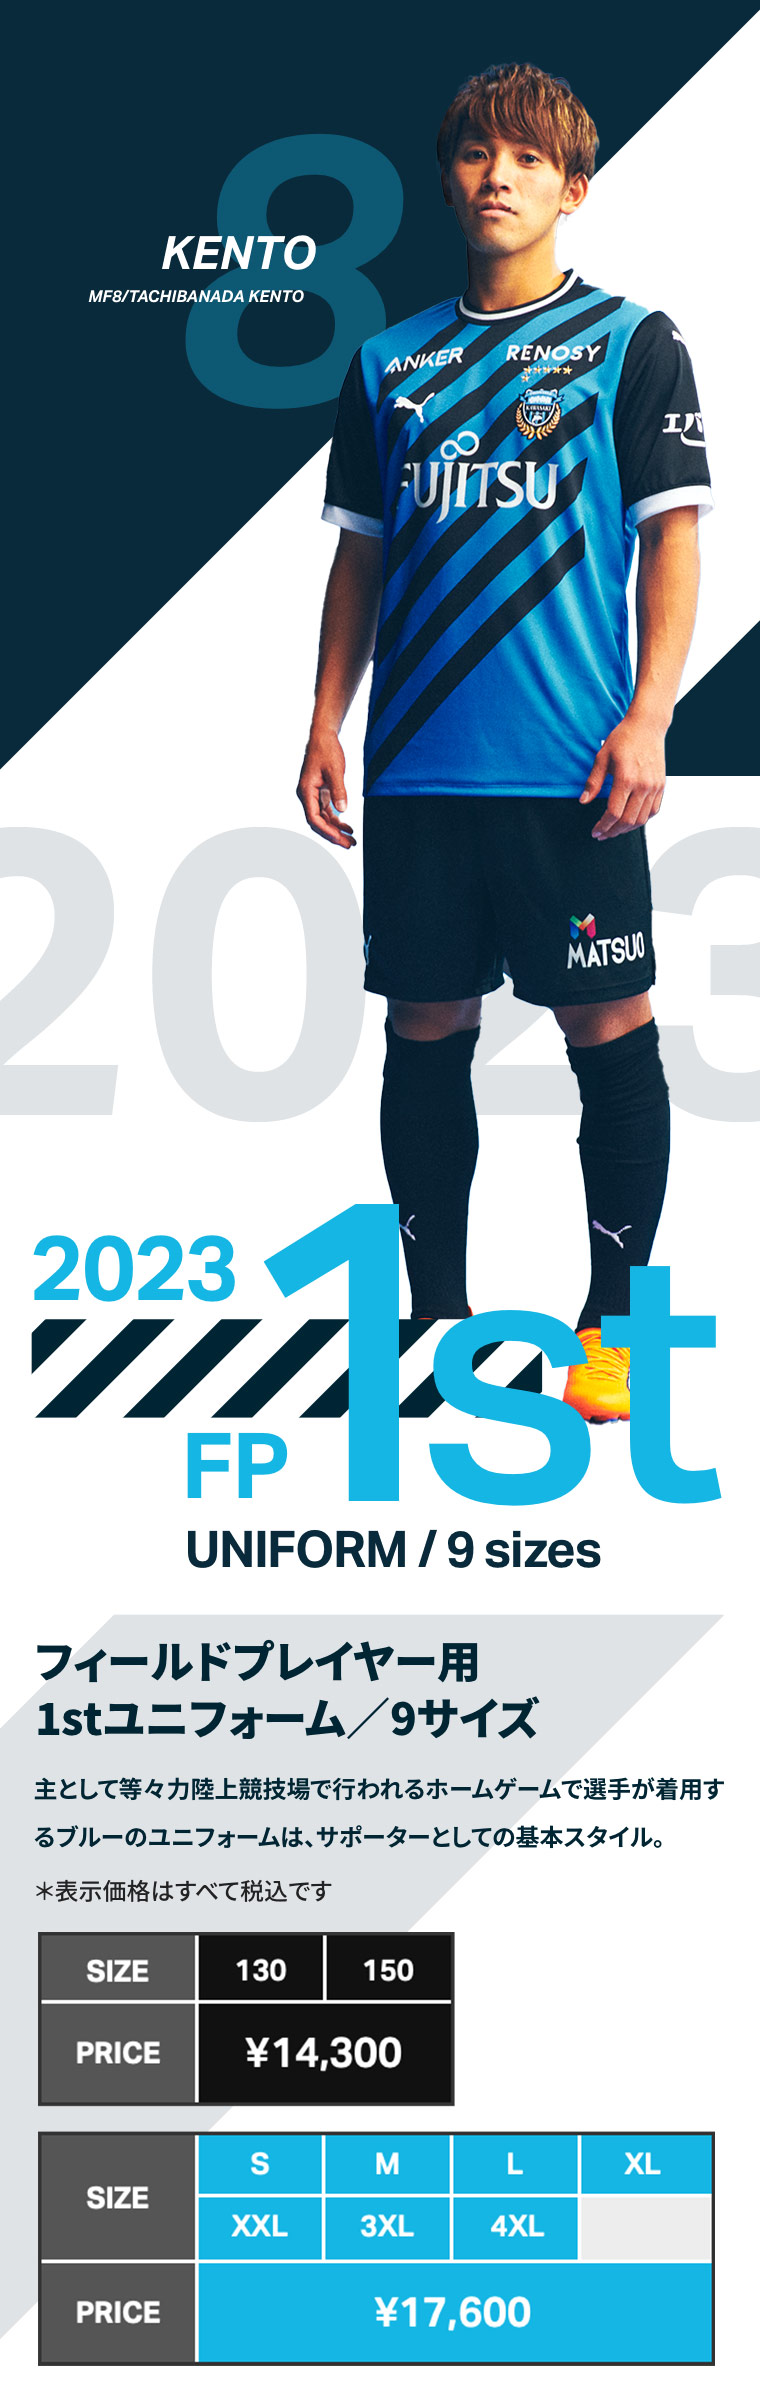 2023シーズン公式ユニフォーム FP 1st